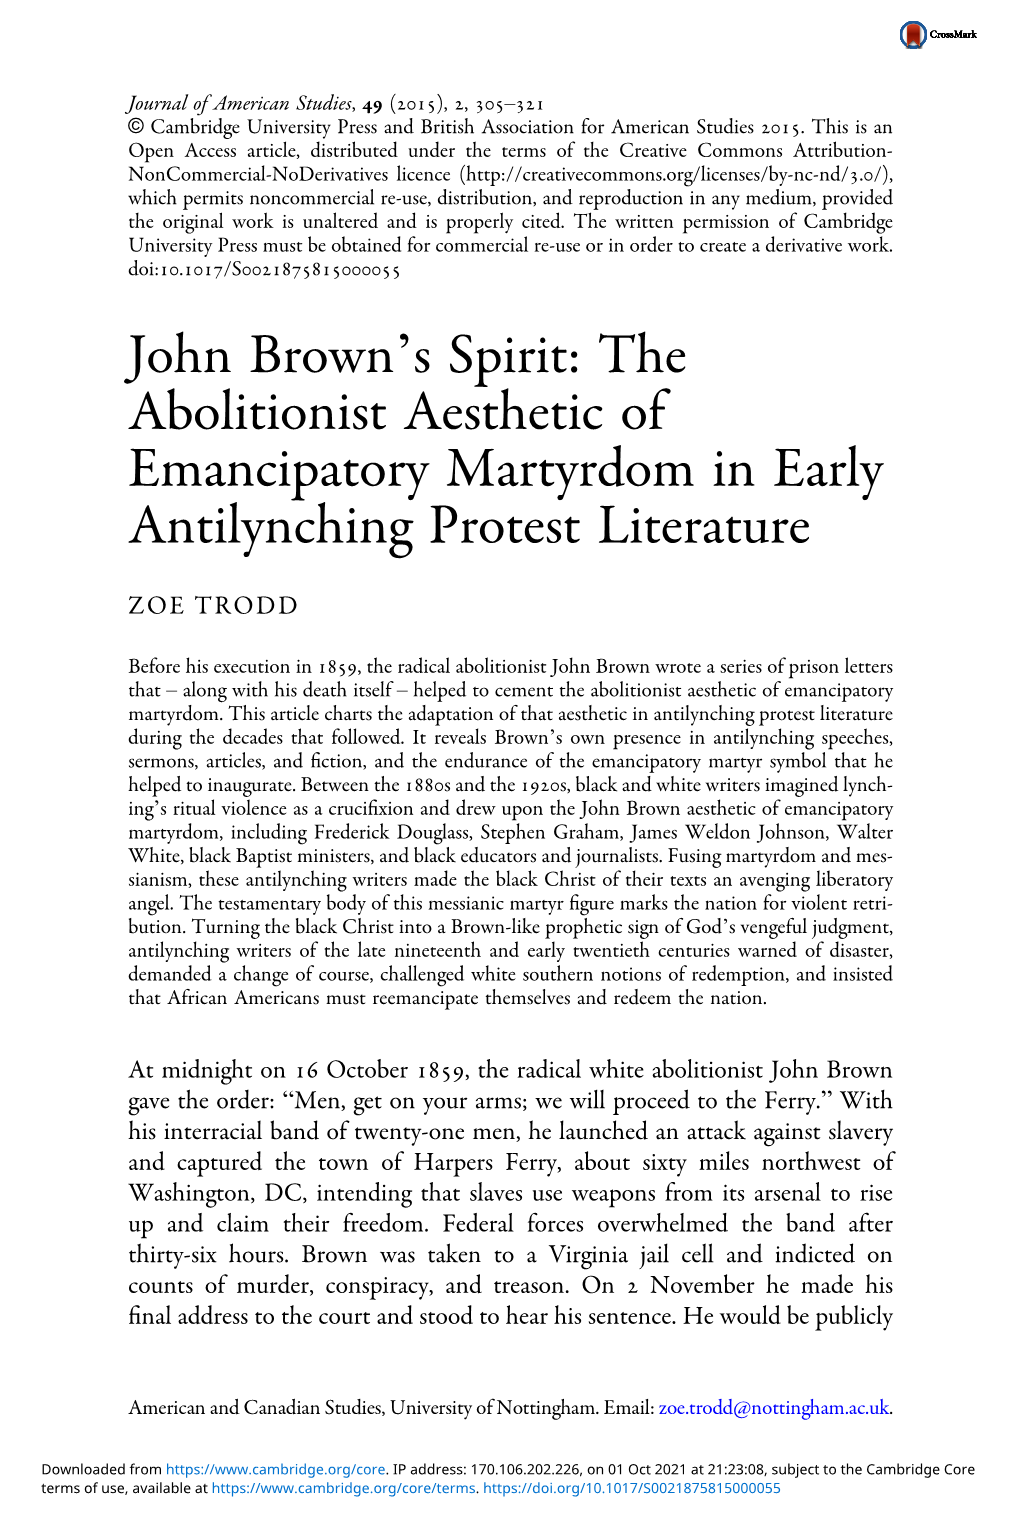 John Brown's Spirit